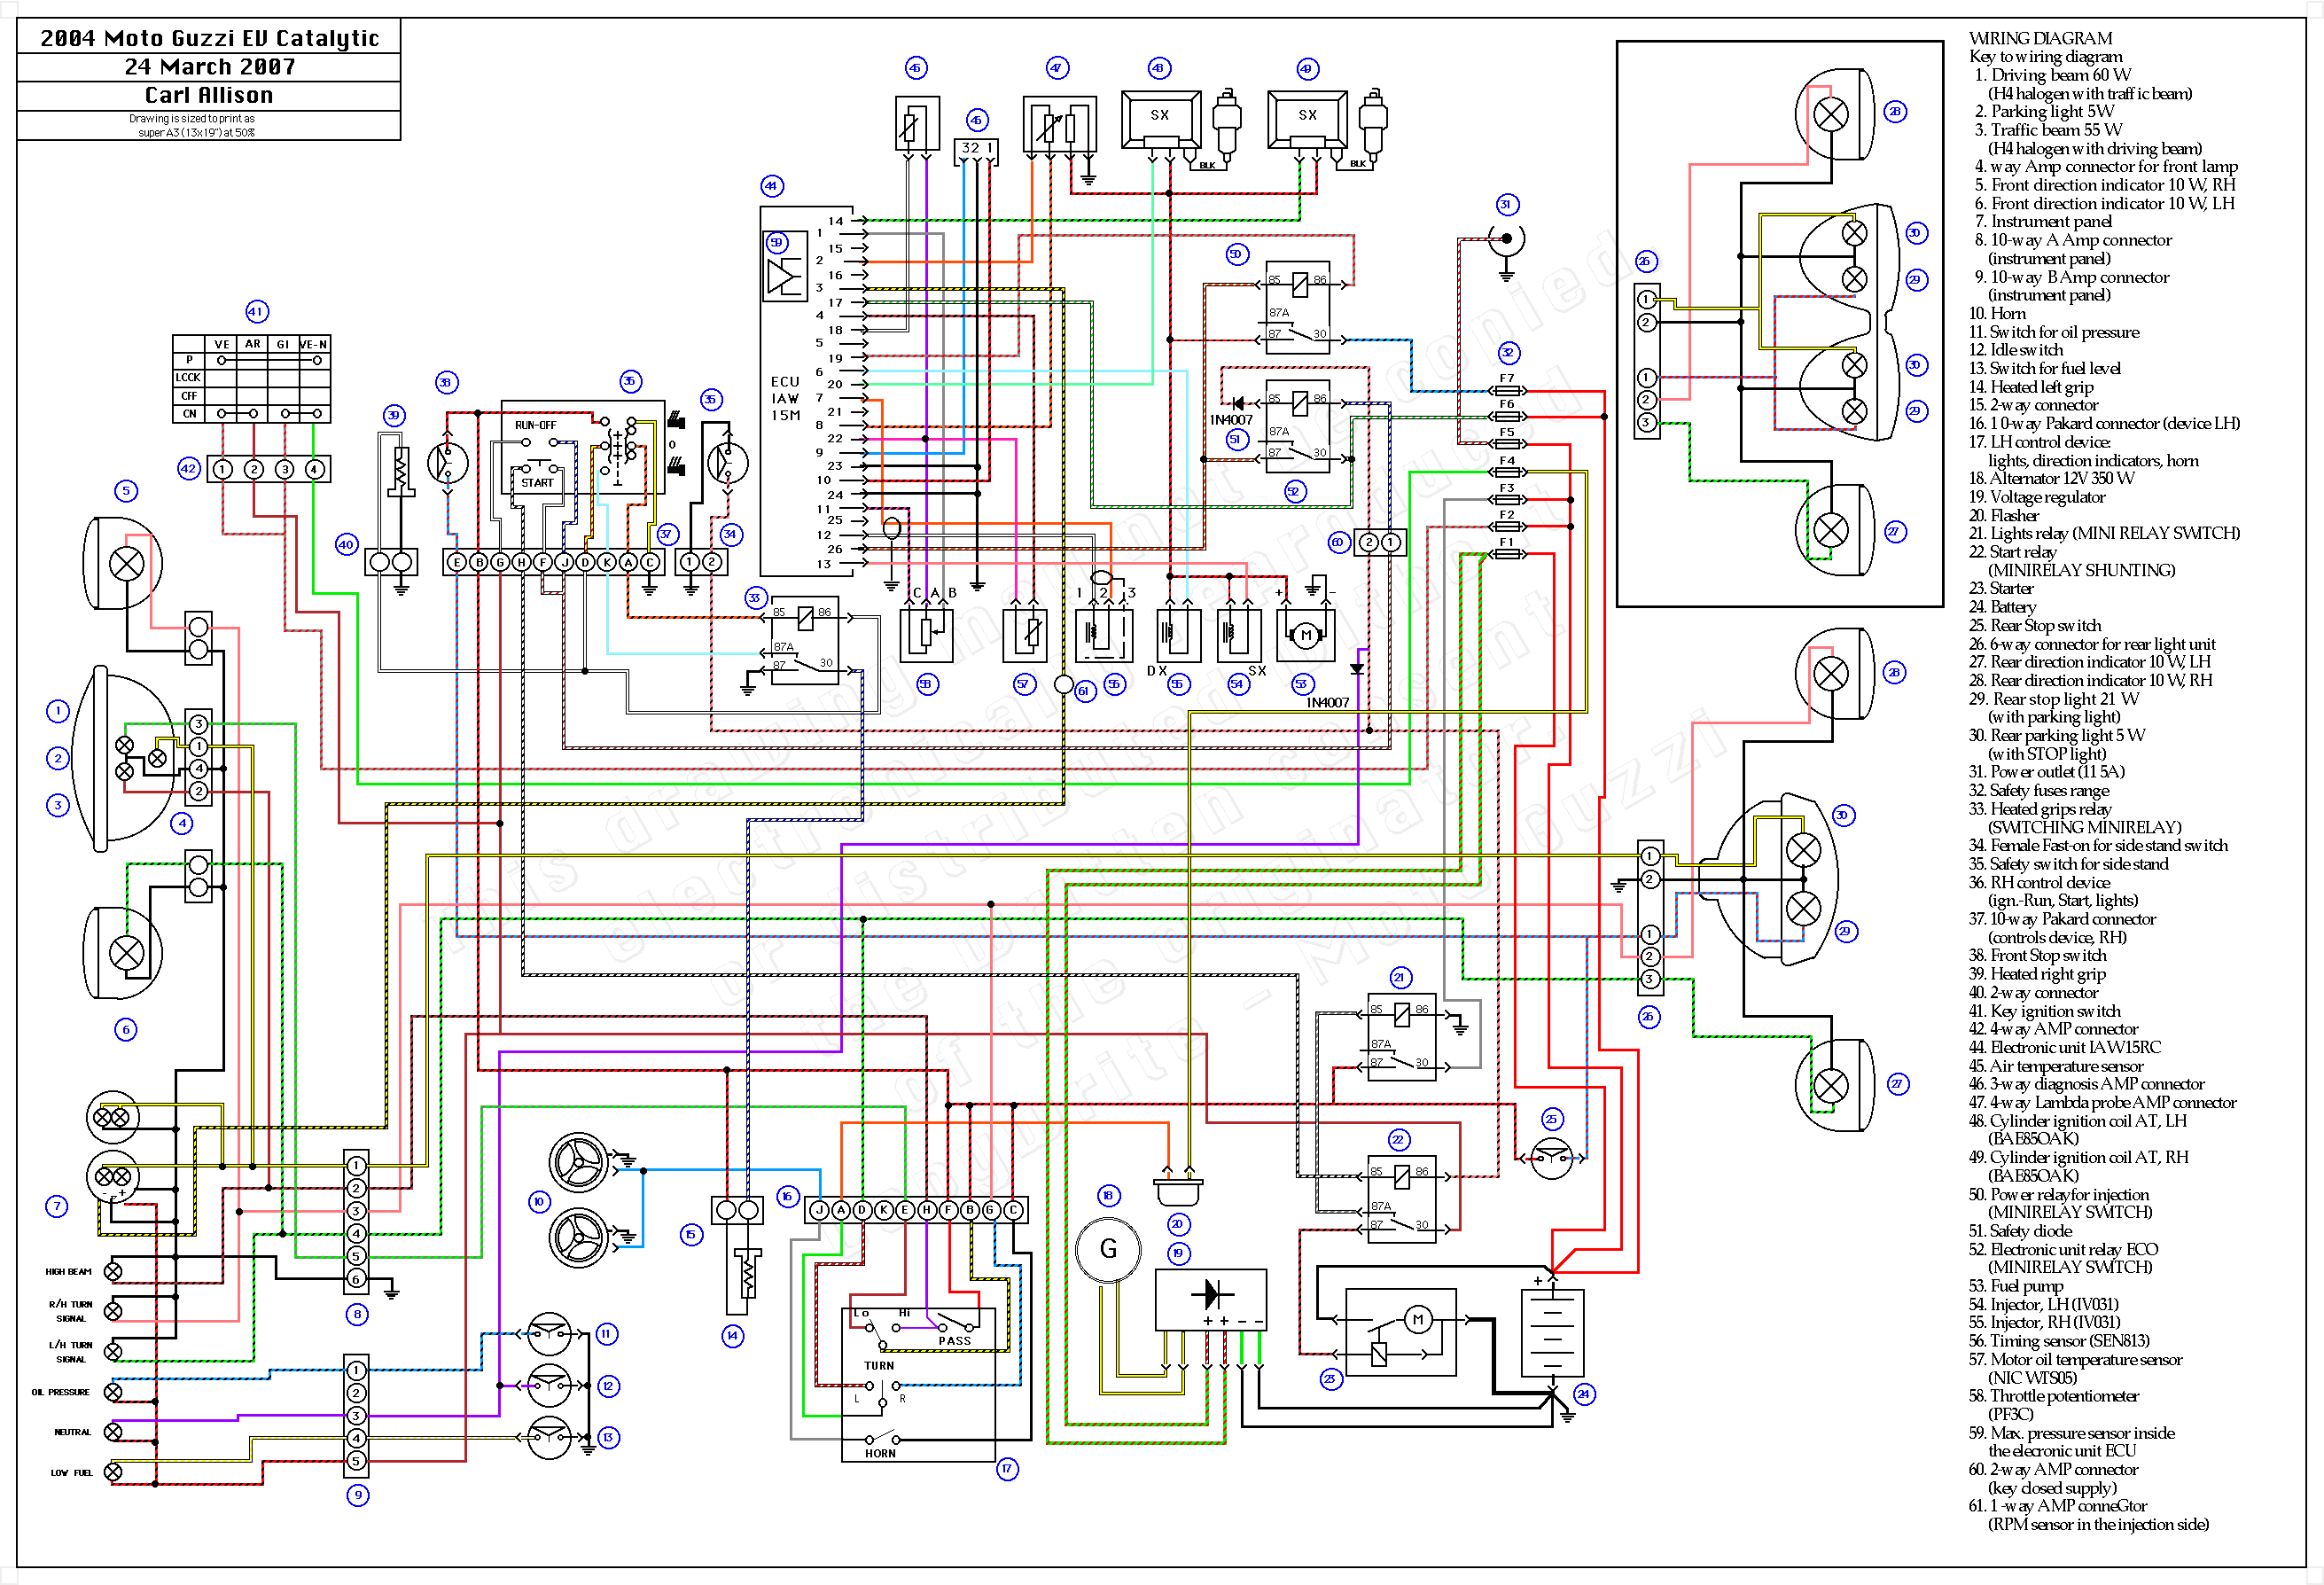 vivaro wiring diagram free download